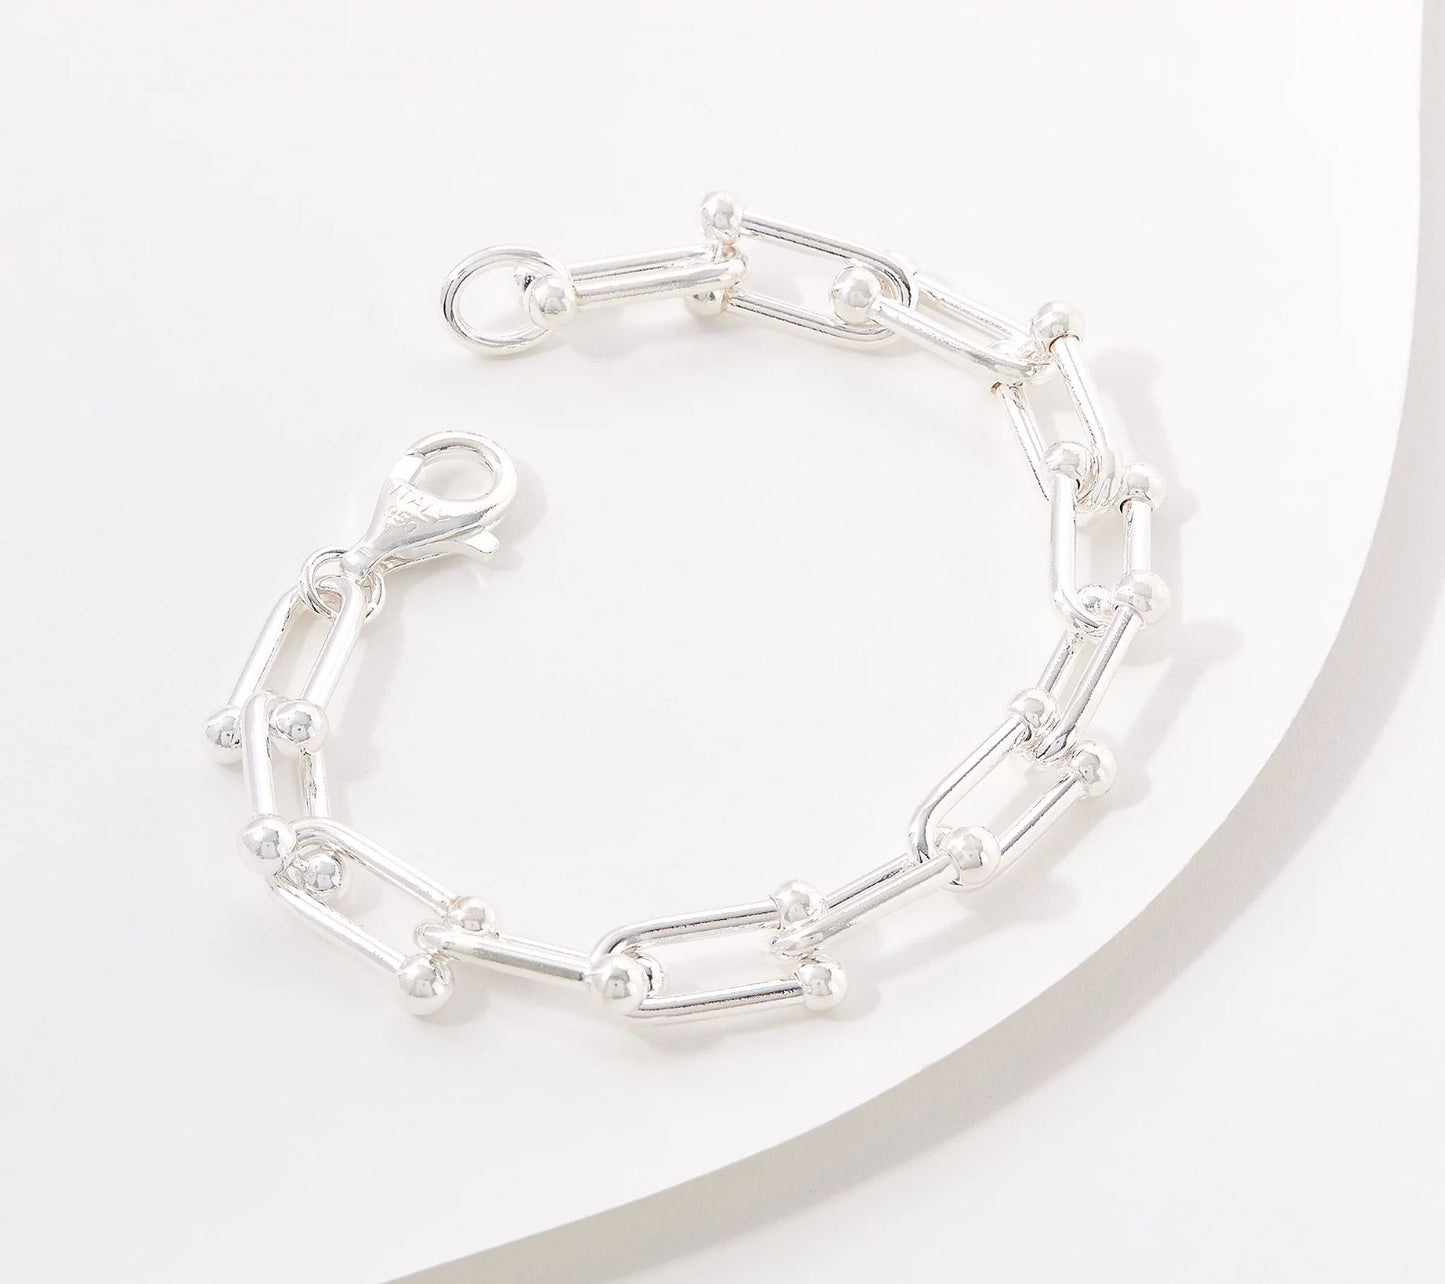 UltraFine 950 Silver Fancy U-link chain Bracelet, Size 6-3/4"